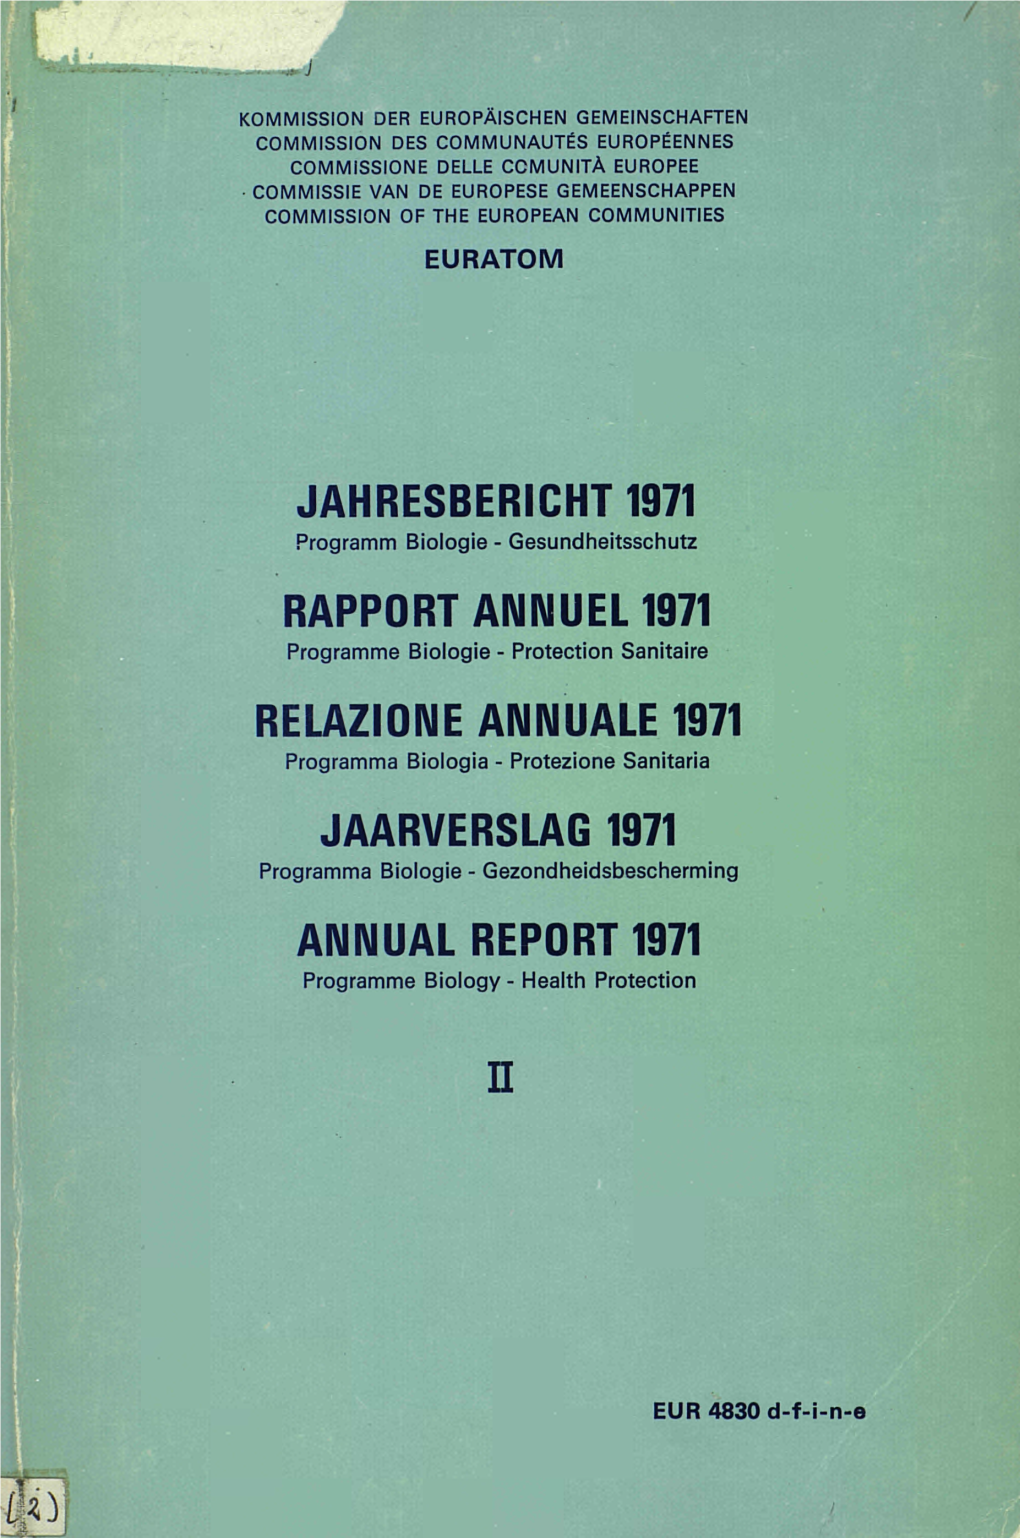 JAARVERSLAG 1971: Programma Biologie: Gezondheidsbescherming